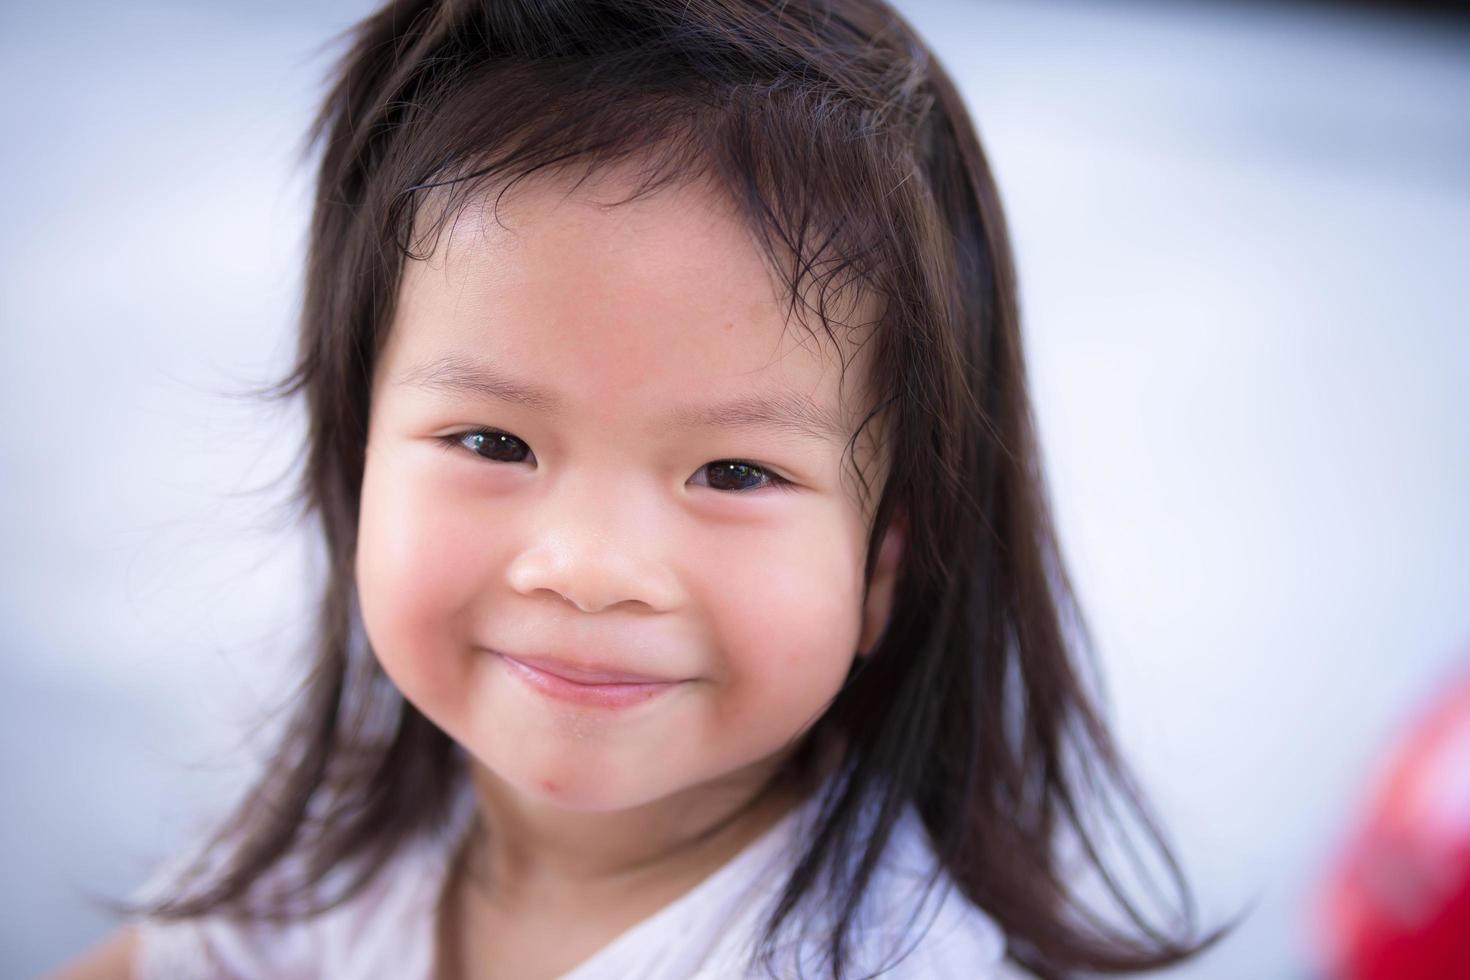 sourire doux enfant mignon. photo du visage. fille de 3 ans.